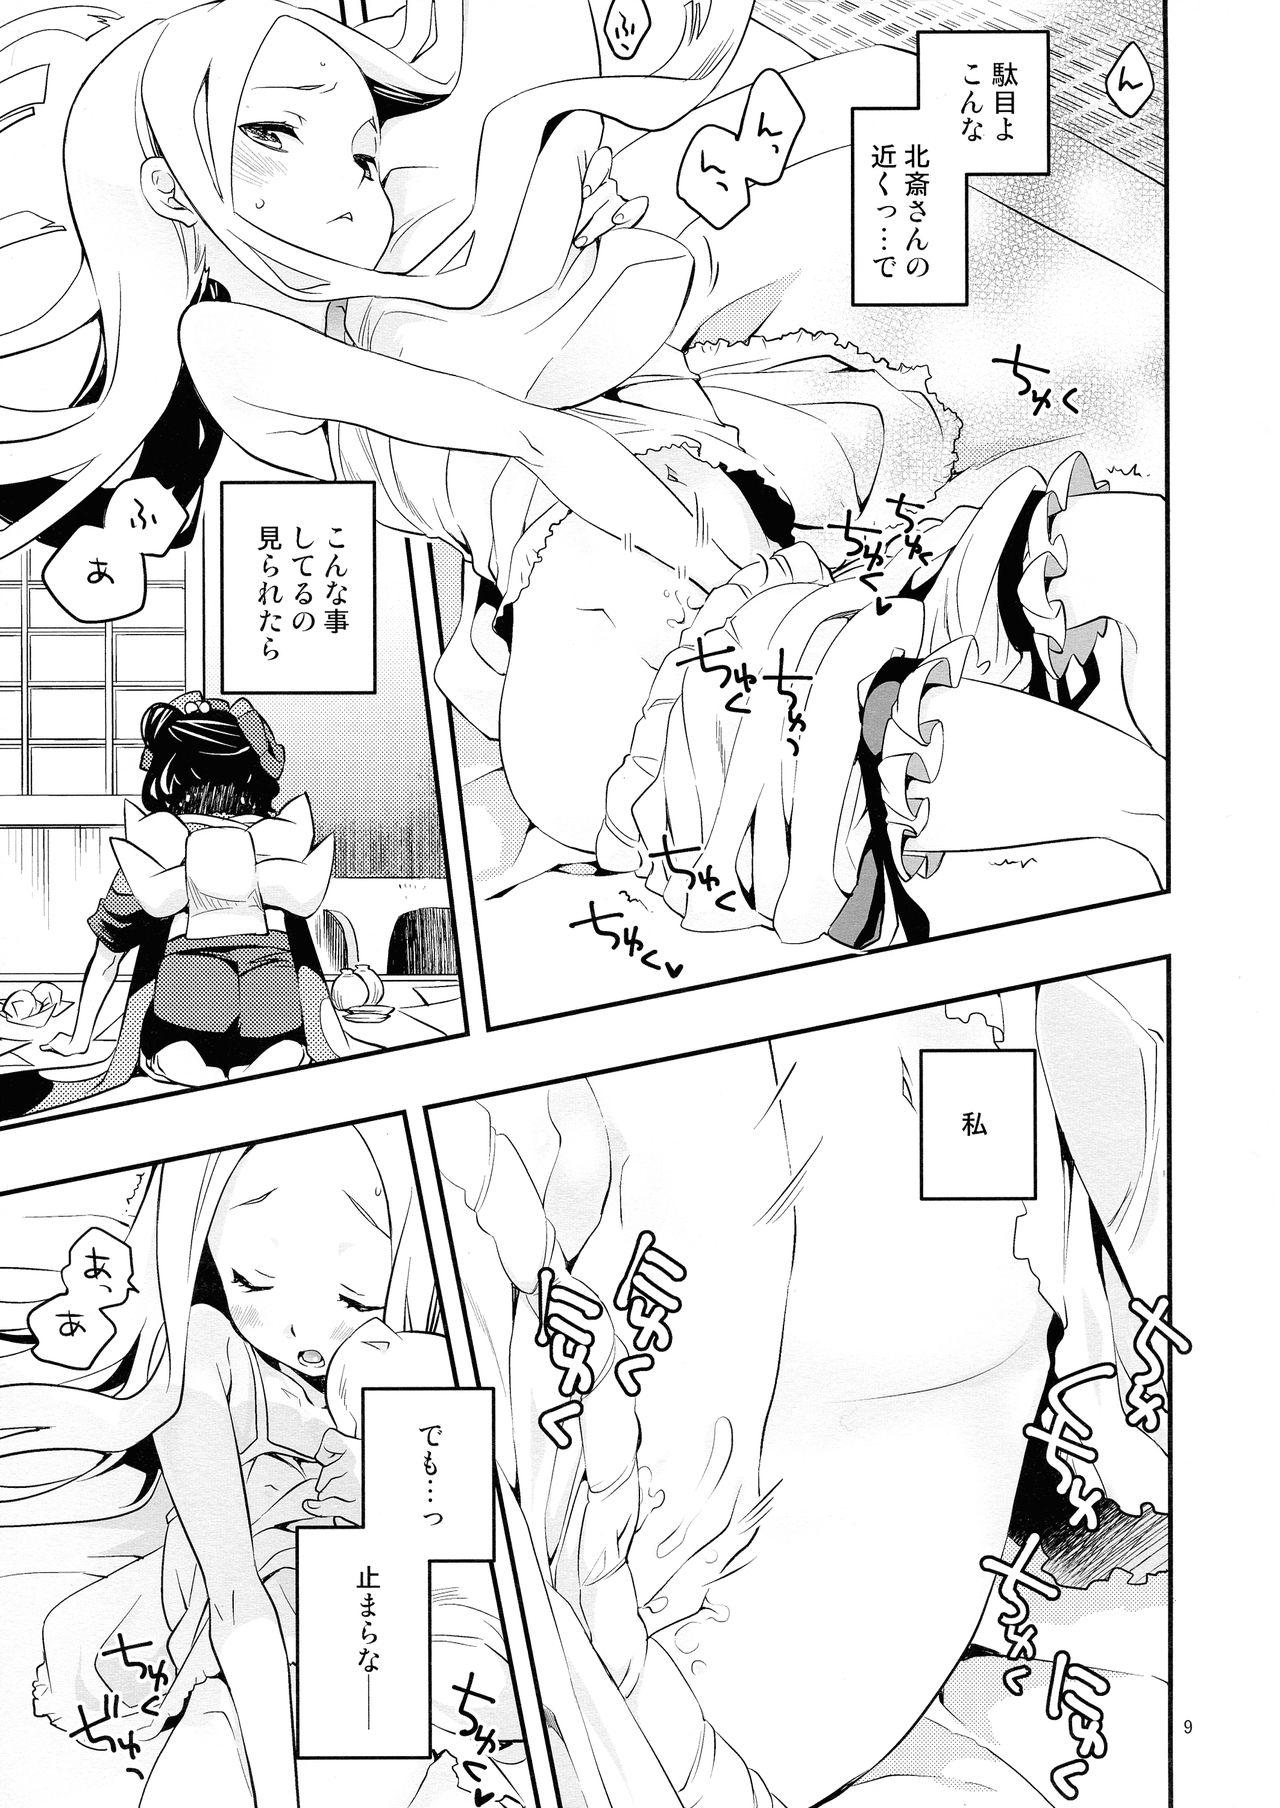 Strange Kyou wa Otomari no Hi dakara - Fate grand order Throatfuck - Page 9